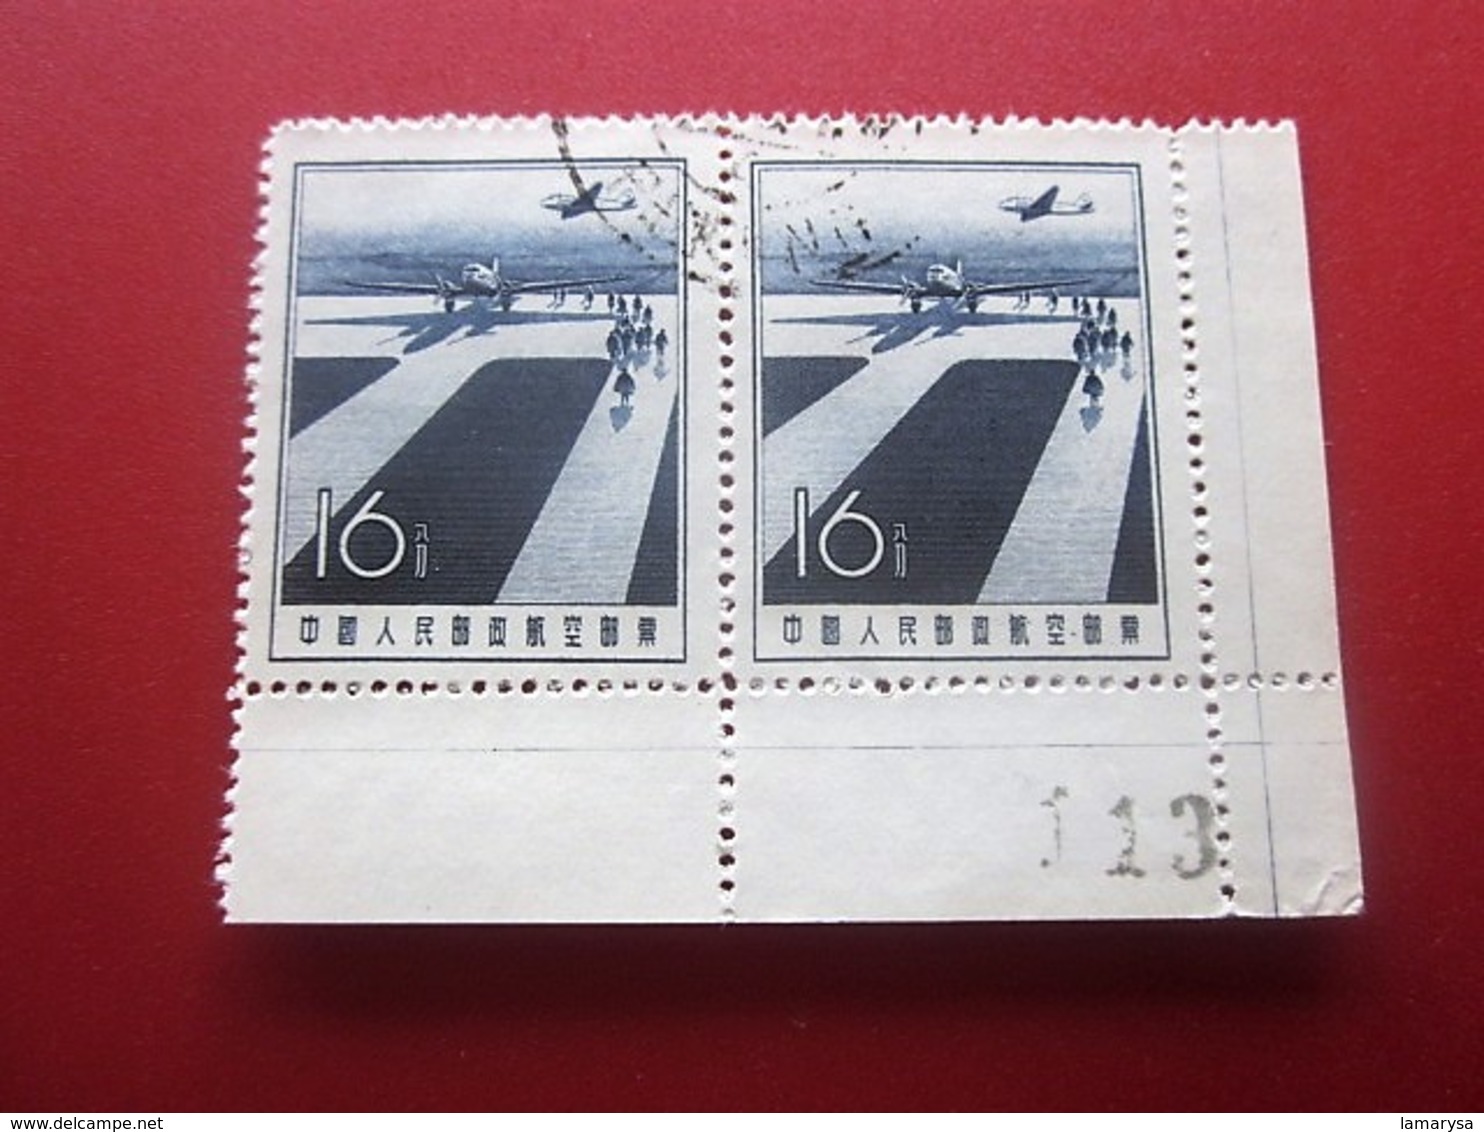 Chine Bloc 2 Timbres-Stamps-République Populaire-Poste Aérienne-Asia China-Popular Republic Airmail-亚洲中国第4区邮票热门共和国航空邮件 - Poste Aérienne